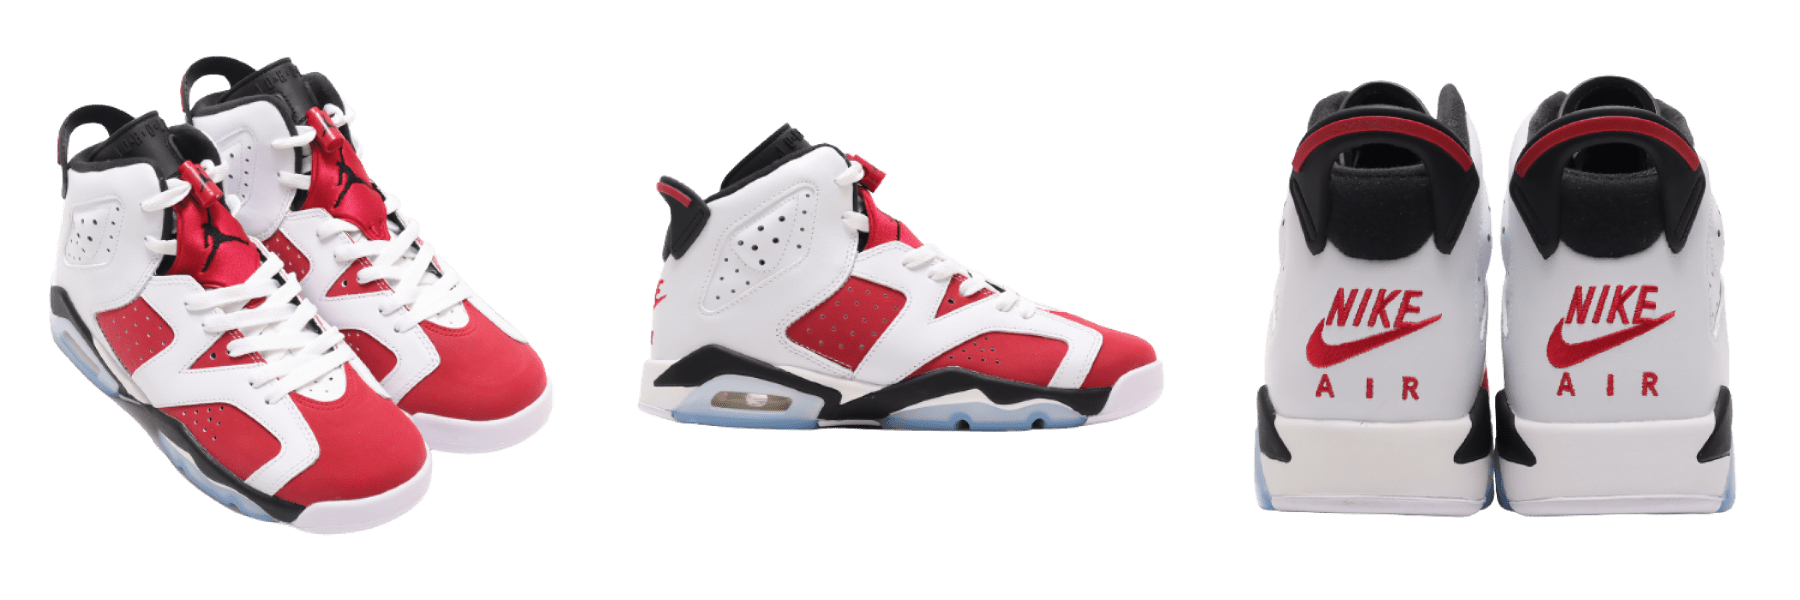 Nike Air Jordan 6 "Carmine" (2021)